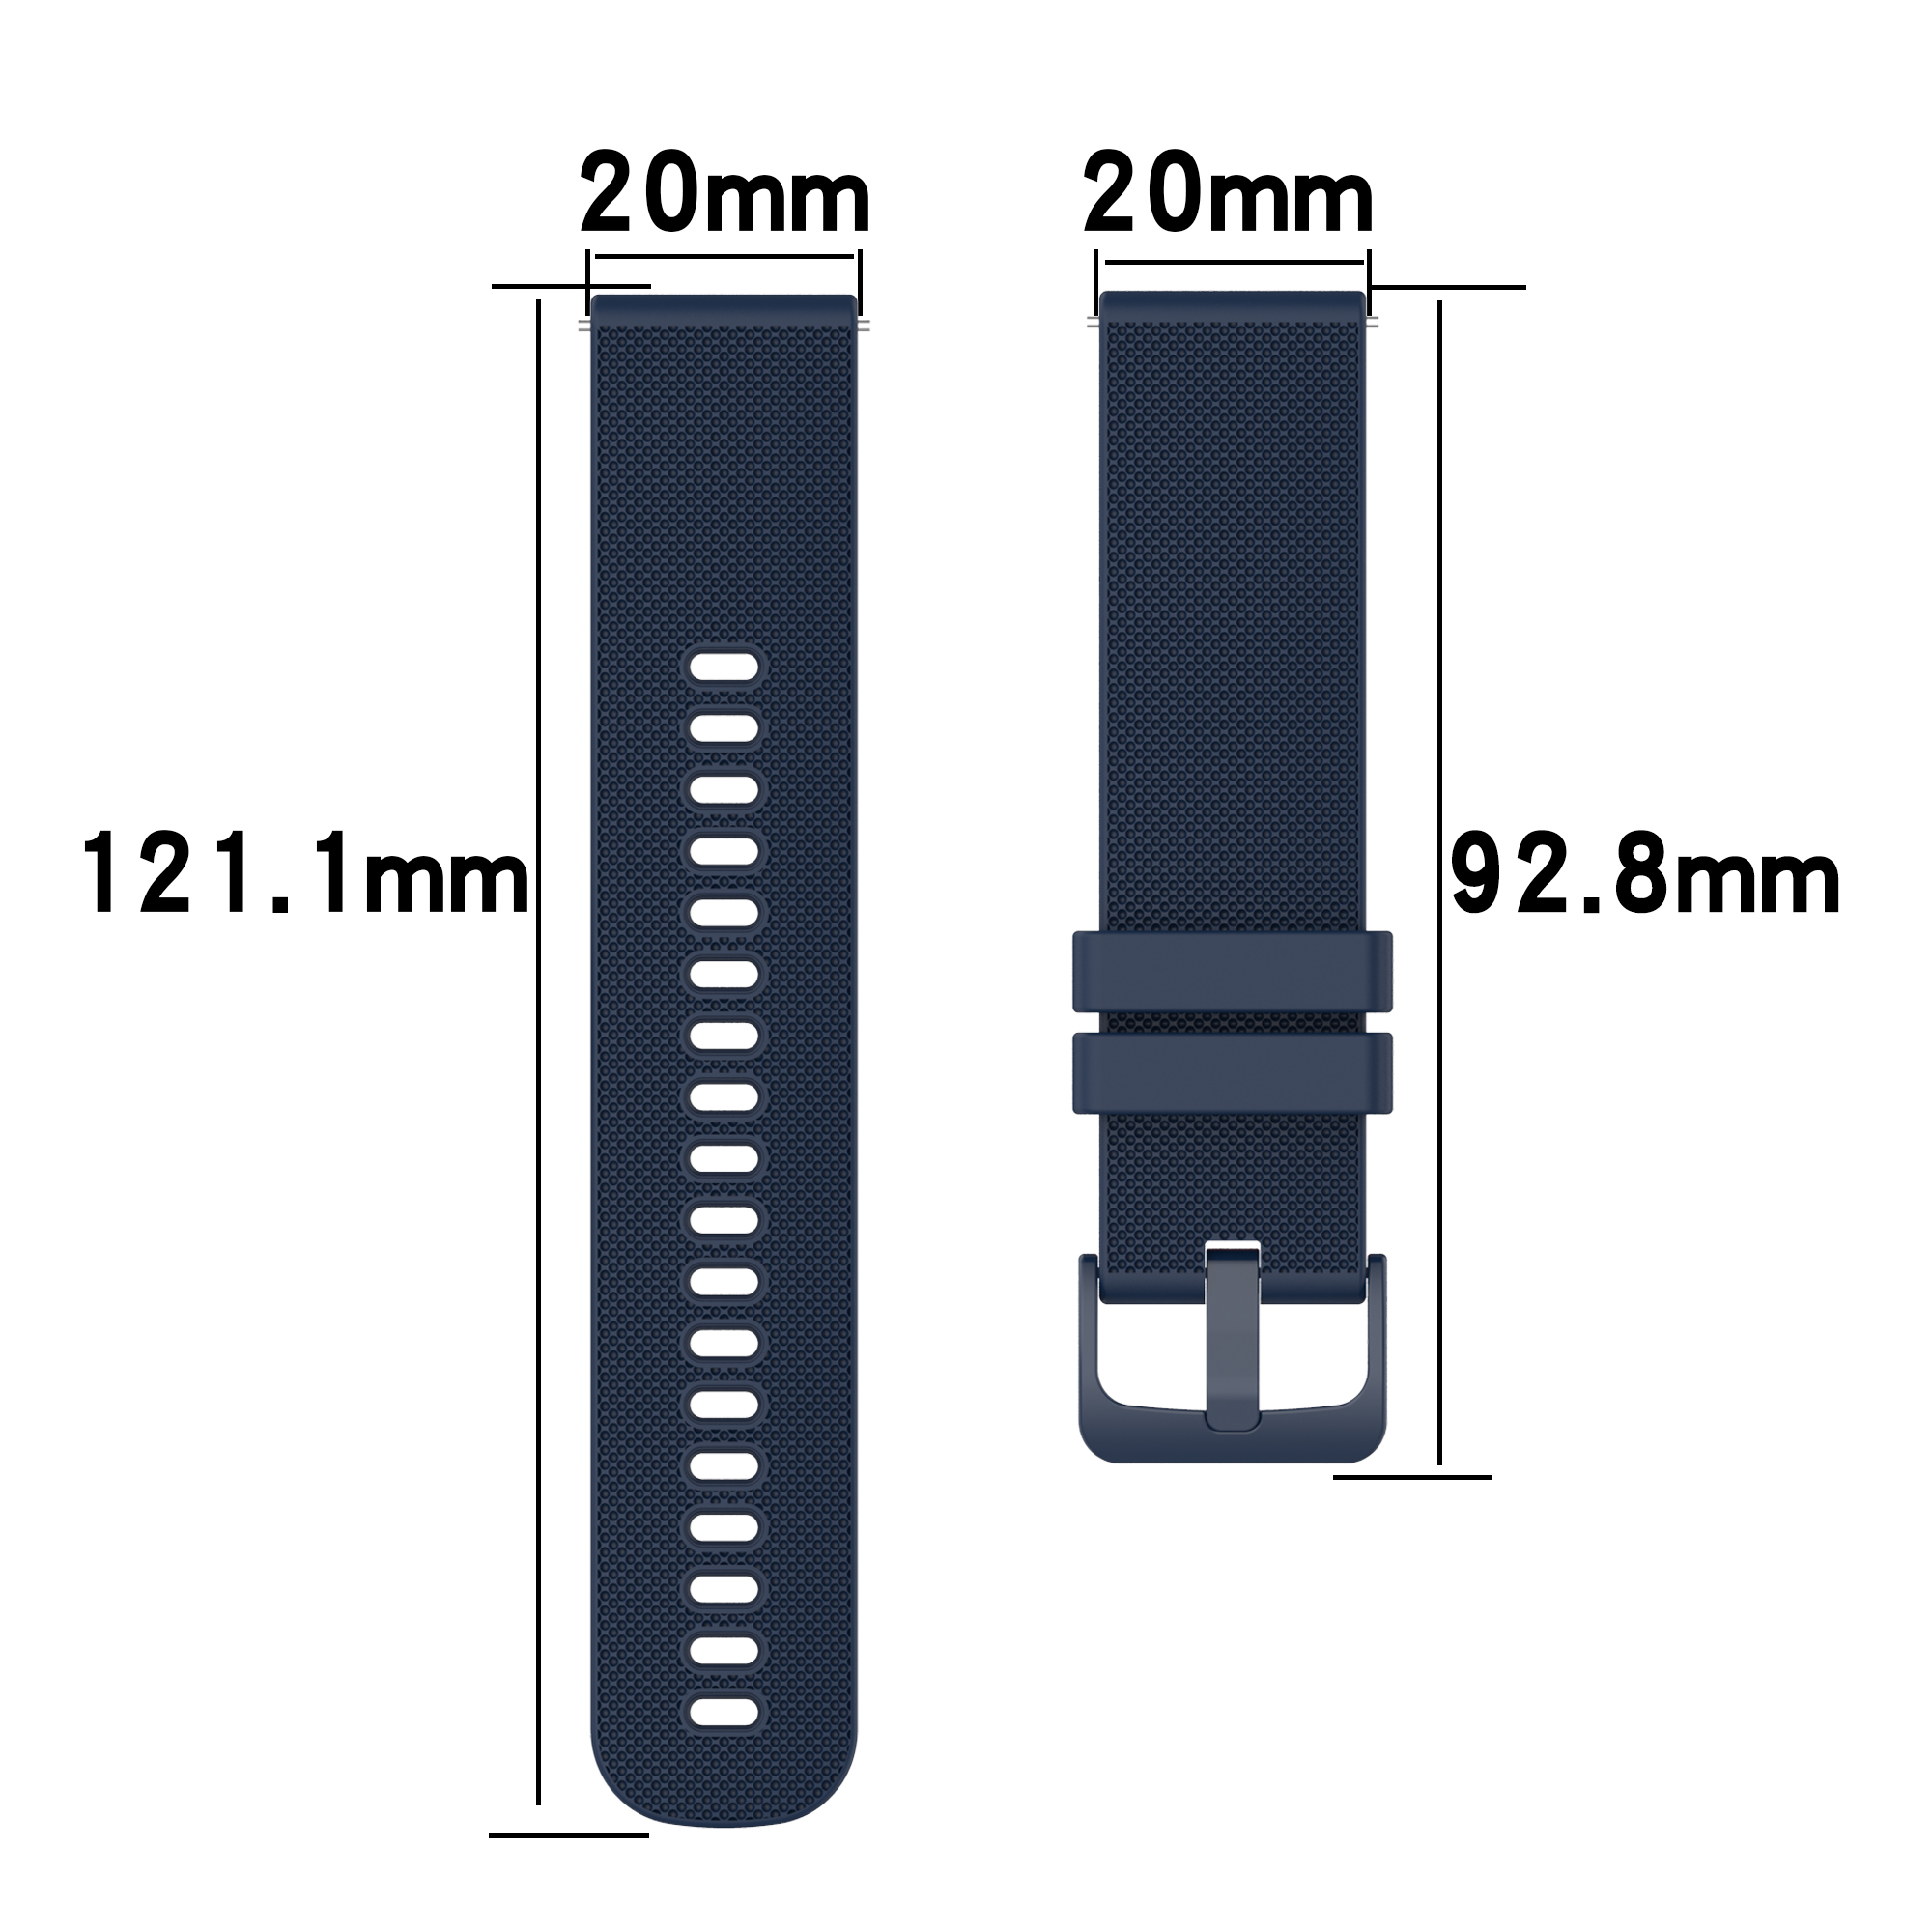 Galaxy Watch Grau/Schwarz Armband Silikon, INF Samsung, Ersatzarmband, 5,